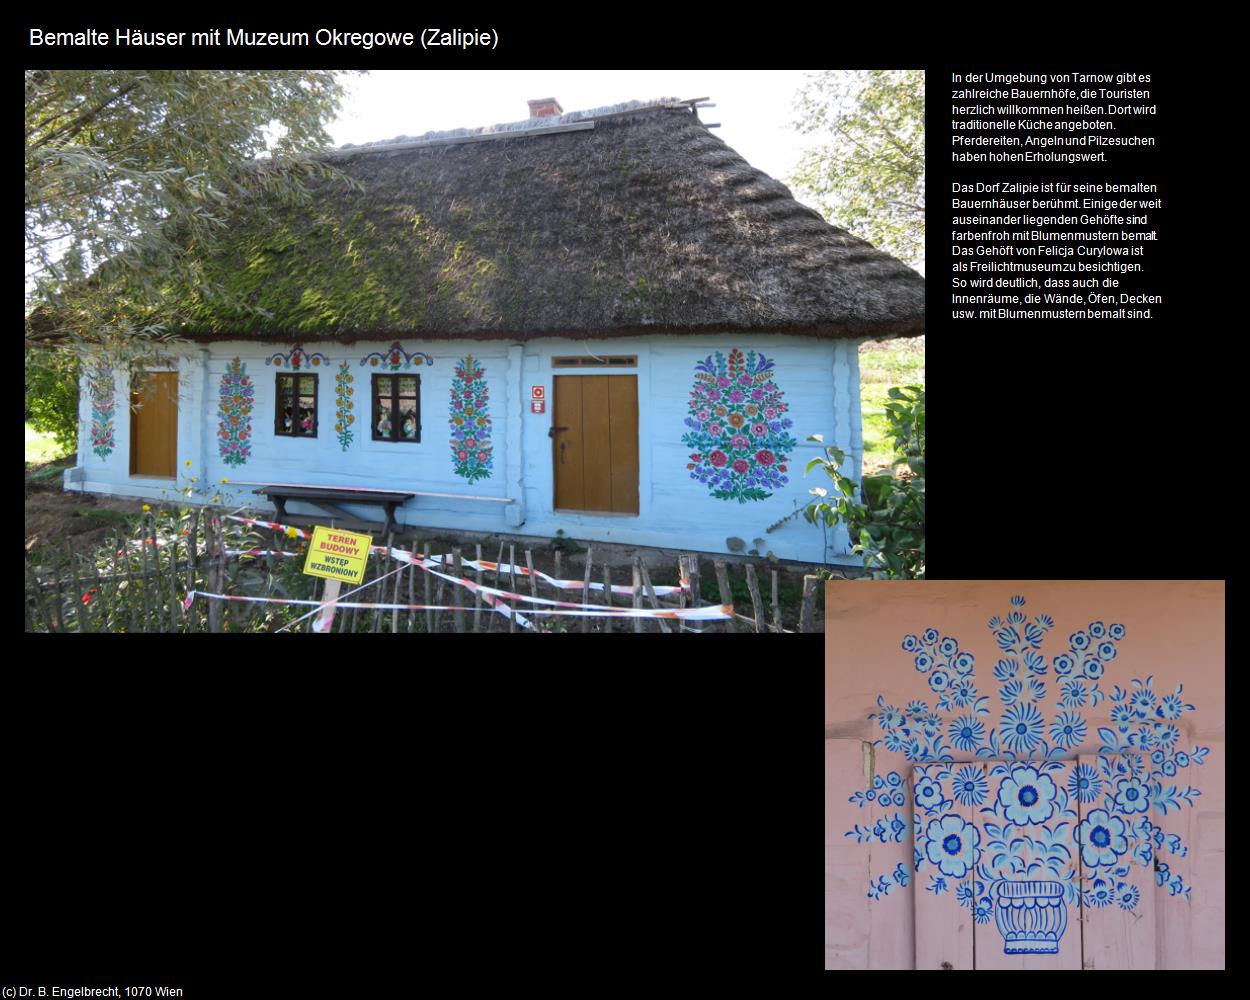 Bemalte Häuser mit Muzeum Okregowe (Zalipie) in POLEN-Galizien